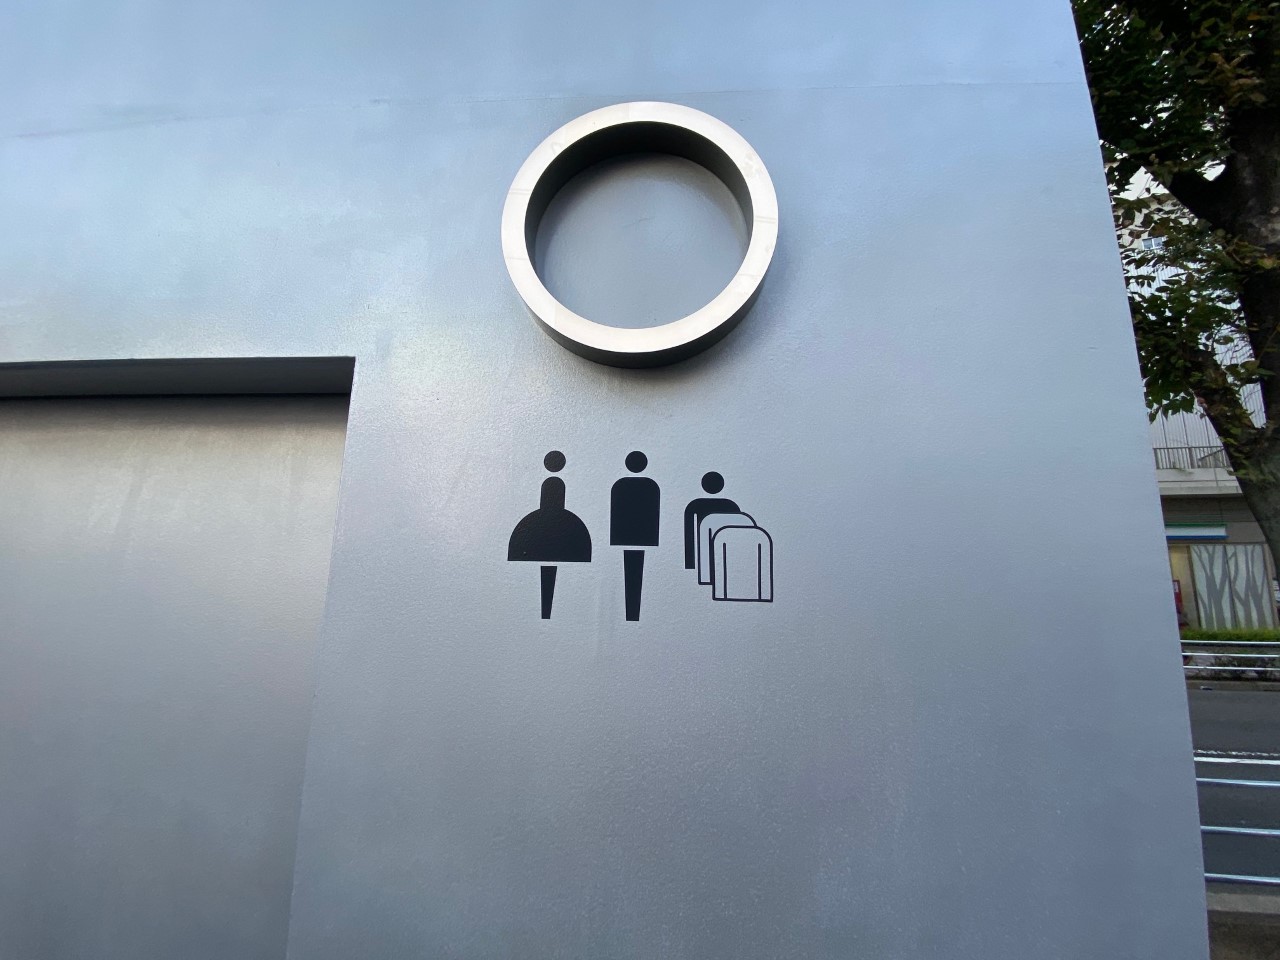 【品川区】大井町駅前公衆便所がお洒落トイレに変身！四角筒形状で用途の異なる6つの男女兼用トイレ。9月11日に利用再開